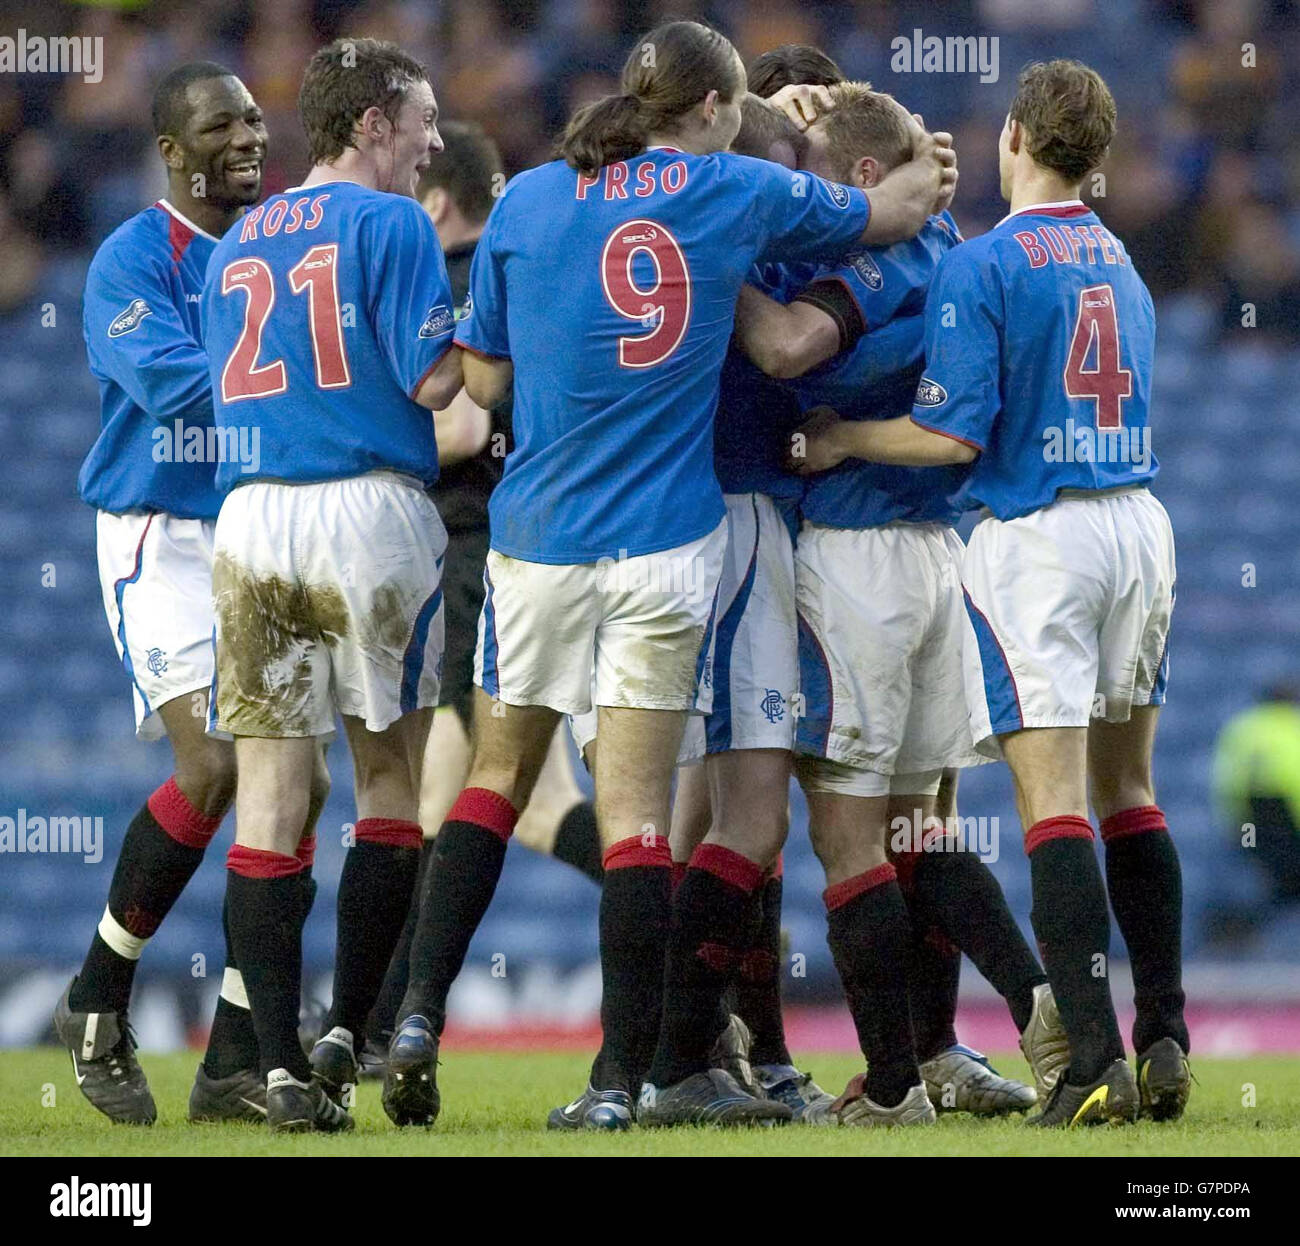 Calcio - Bank of Scotland Premiere League - Rangers / Livingston - Ibrox stadio. I giocatori di Rangers celebrano l'obiettivo di Ricksen Foto Stock